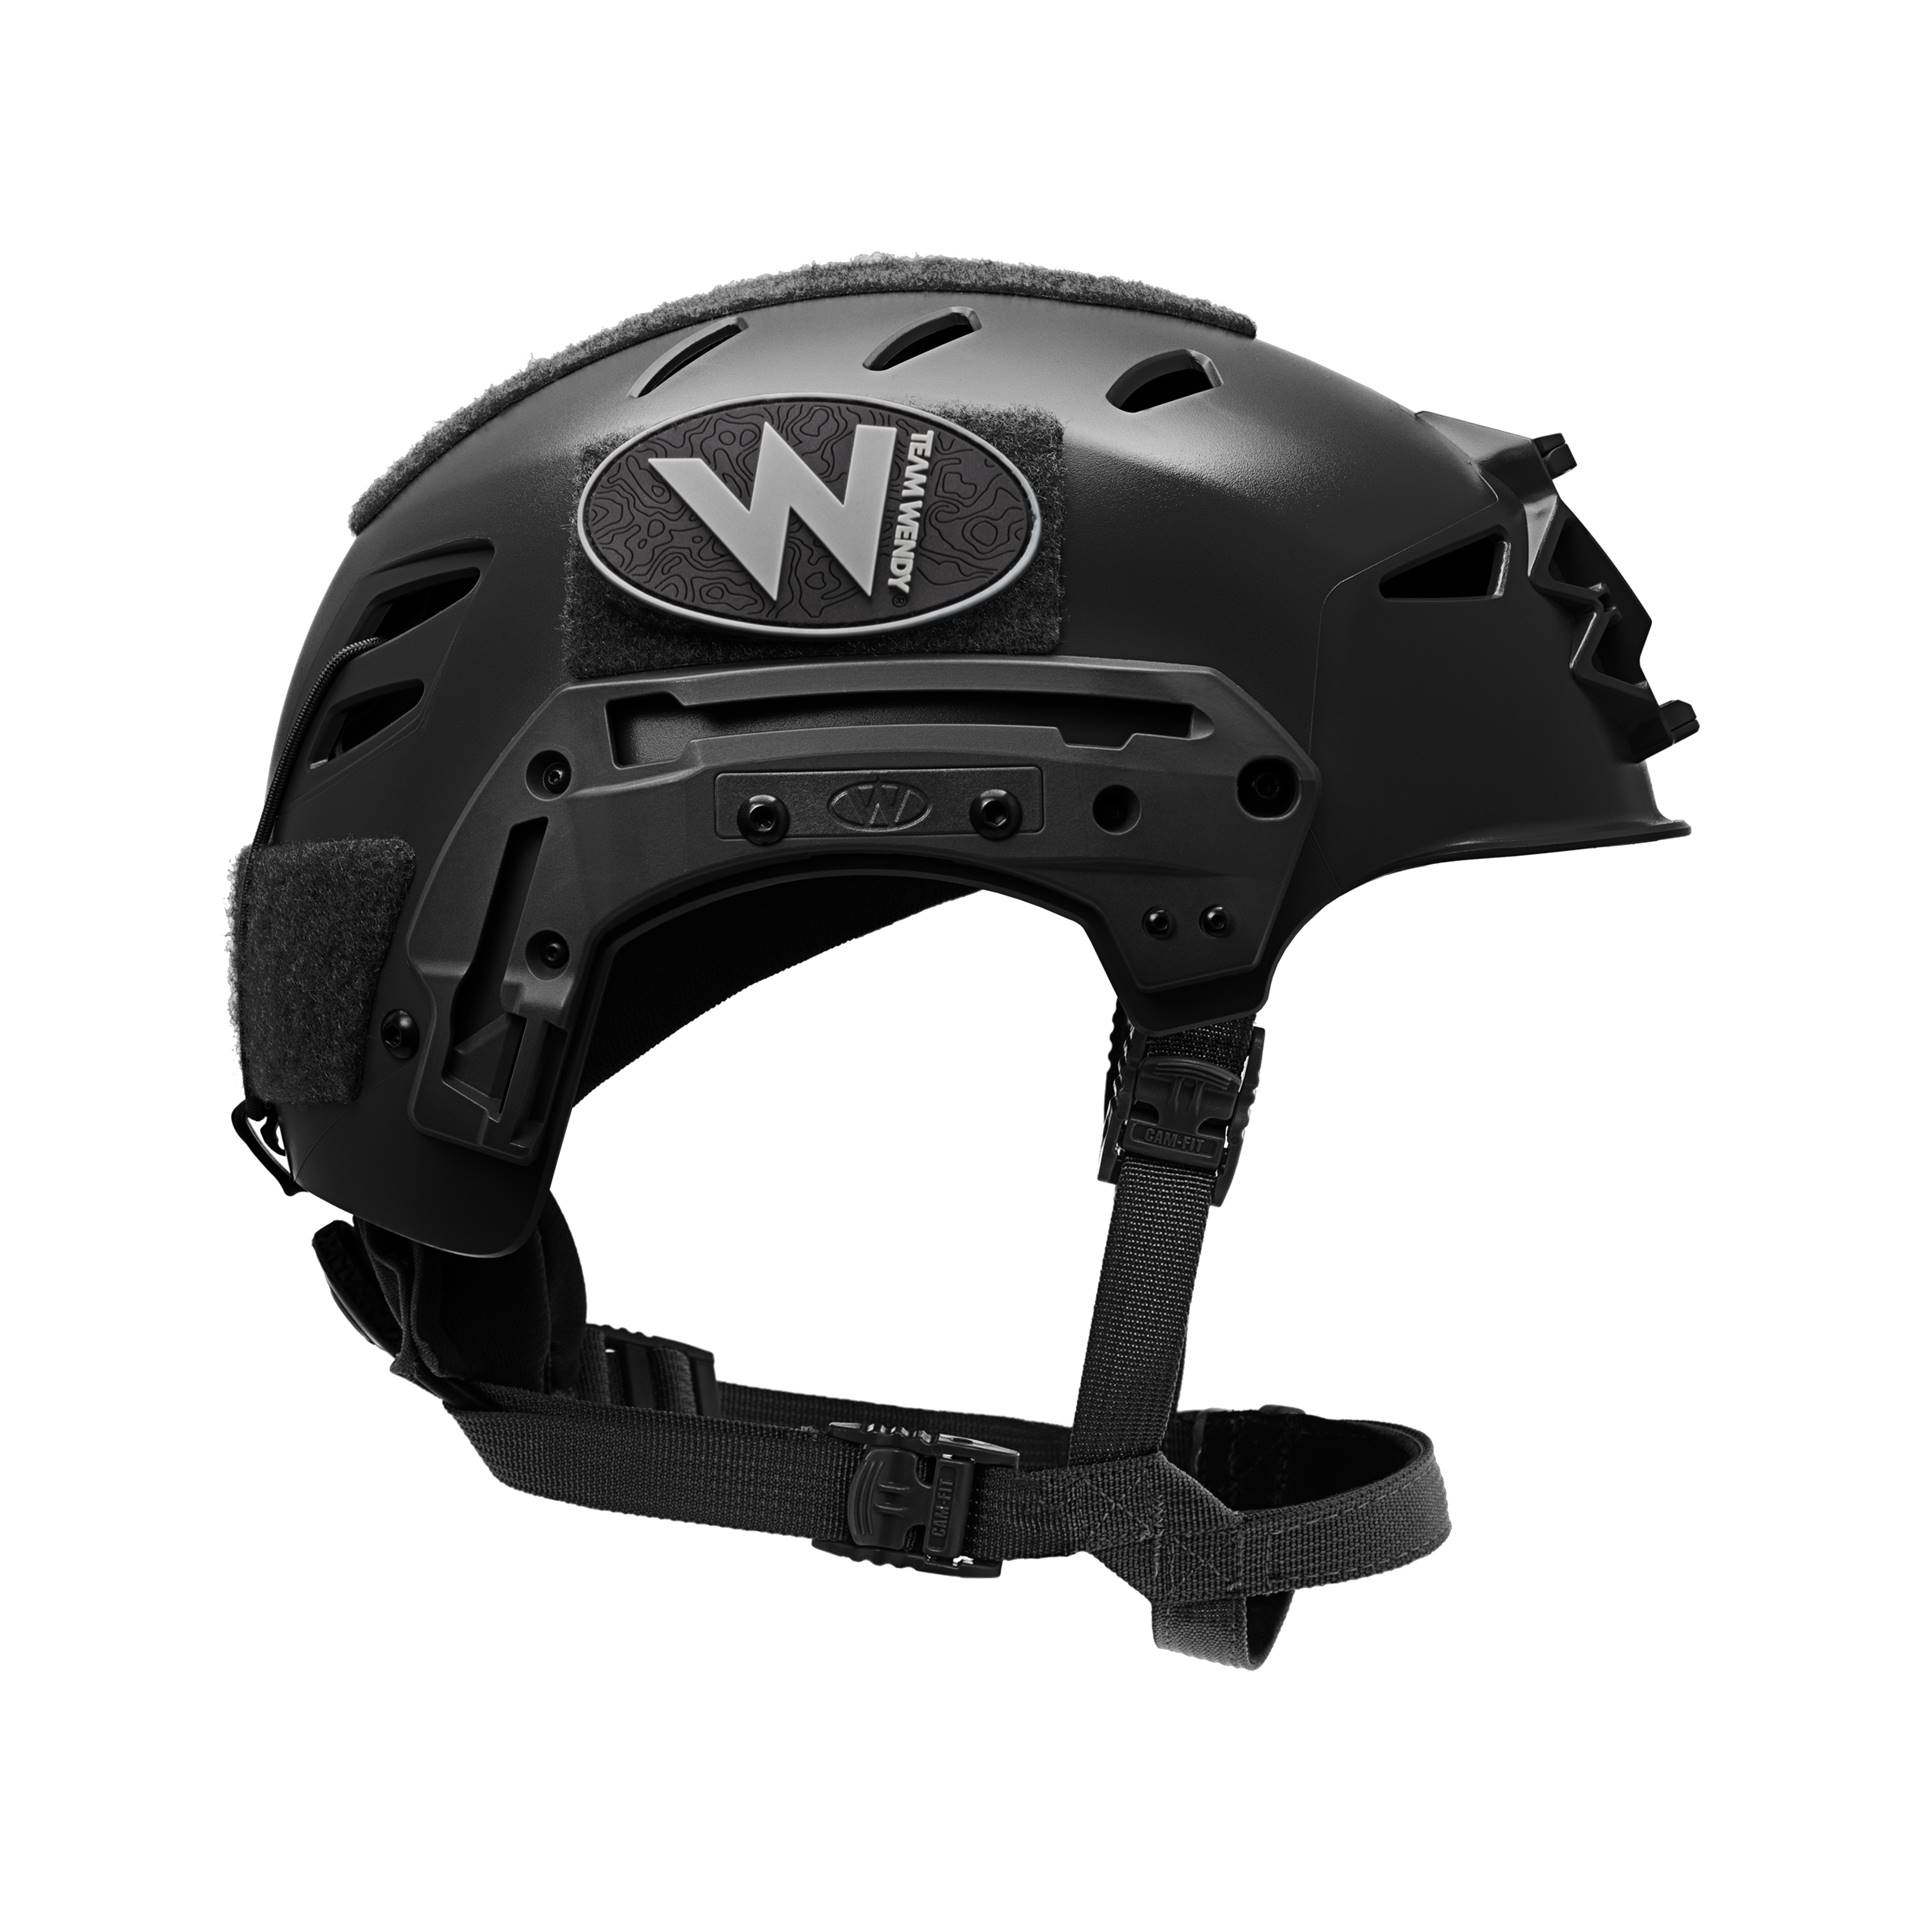 EXFIL® LTP – Lightweight, Tactical, Polymer Bump Helmet | Team Wendy